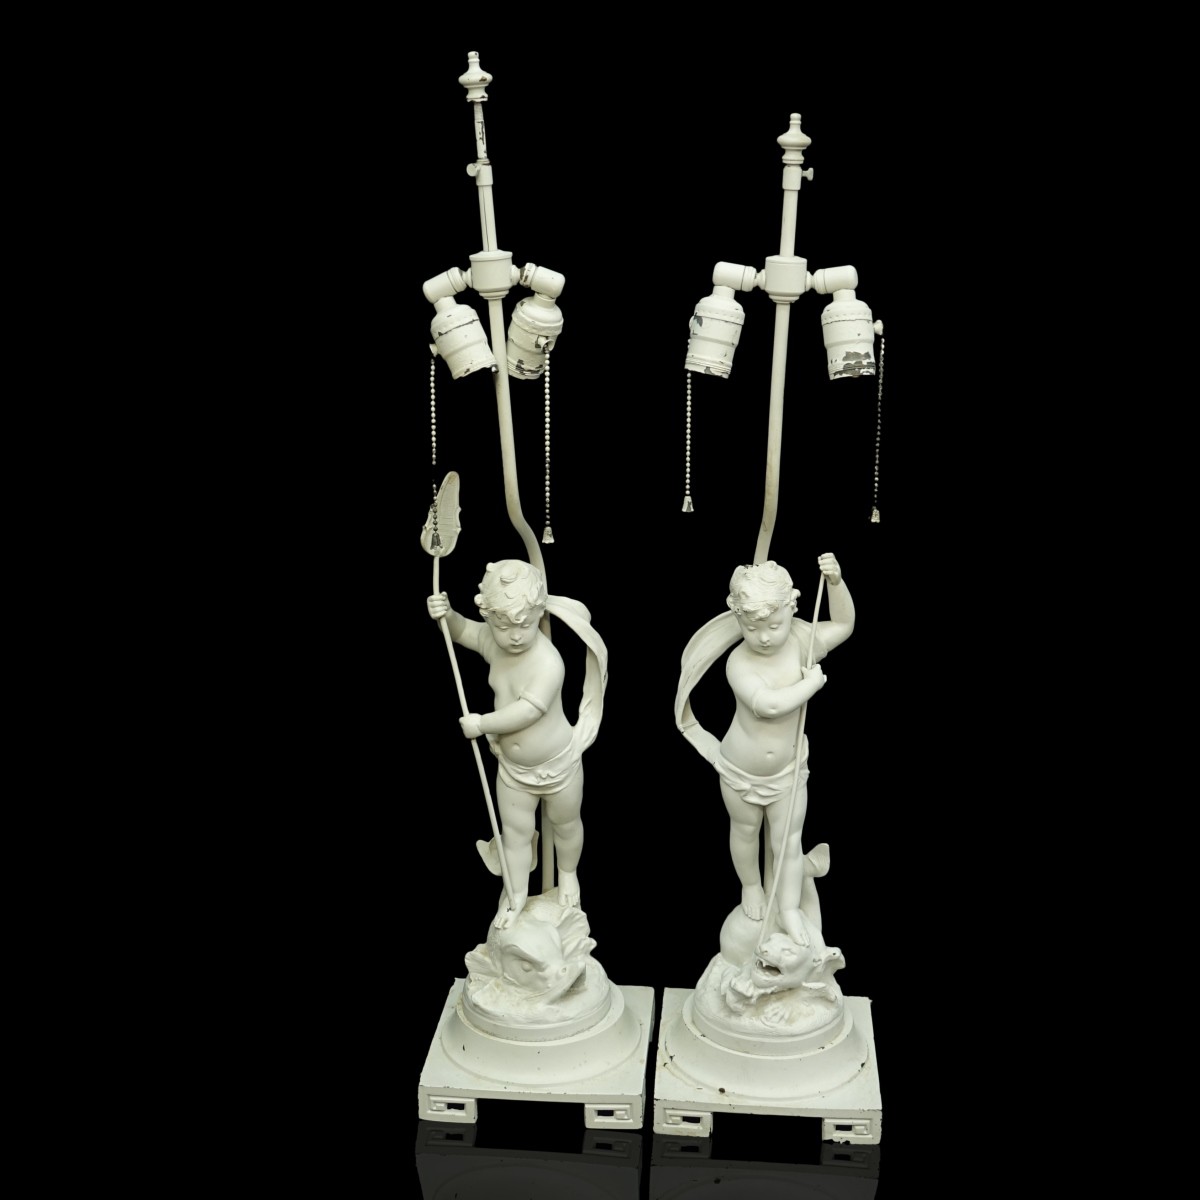 2 V. Rousseau (1865-1954) Metal Sculpture Lamps